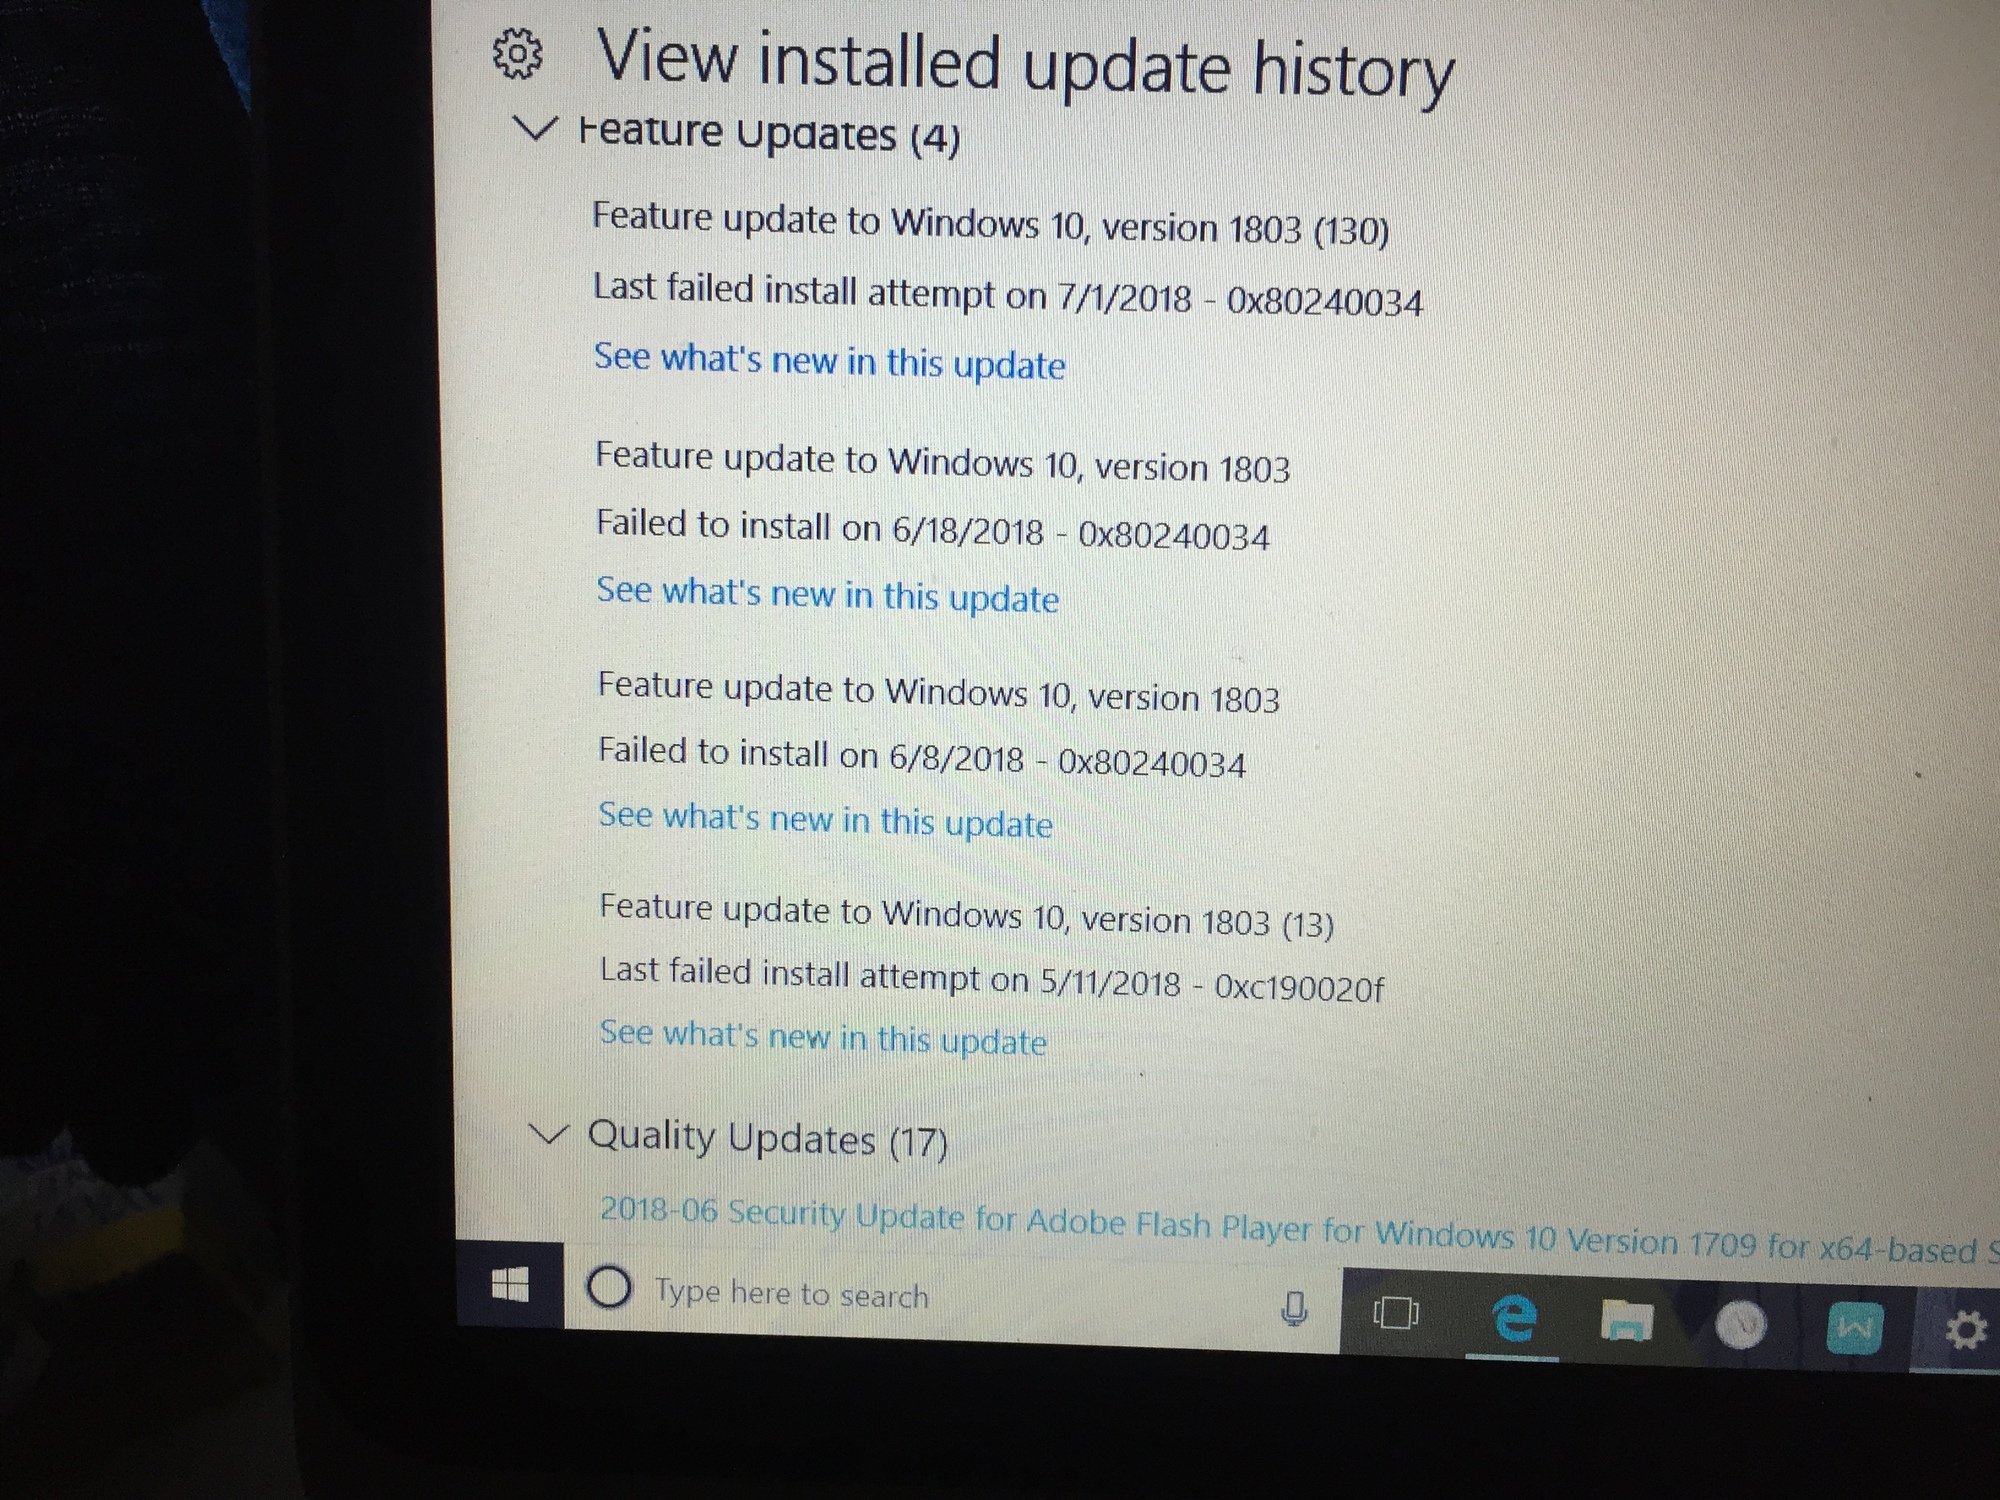 Can't finish update - Windows 10 55dfd844-3dc4-44a1-a7cd-fac694d0ddfc?upload=true.jpg